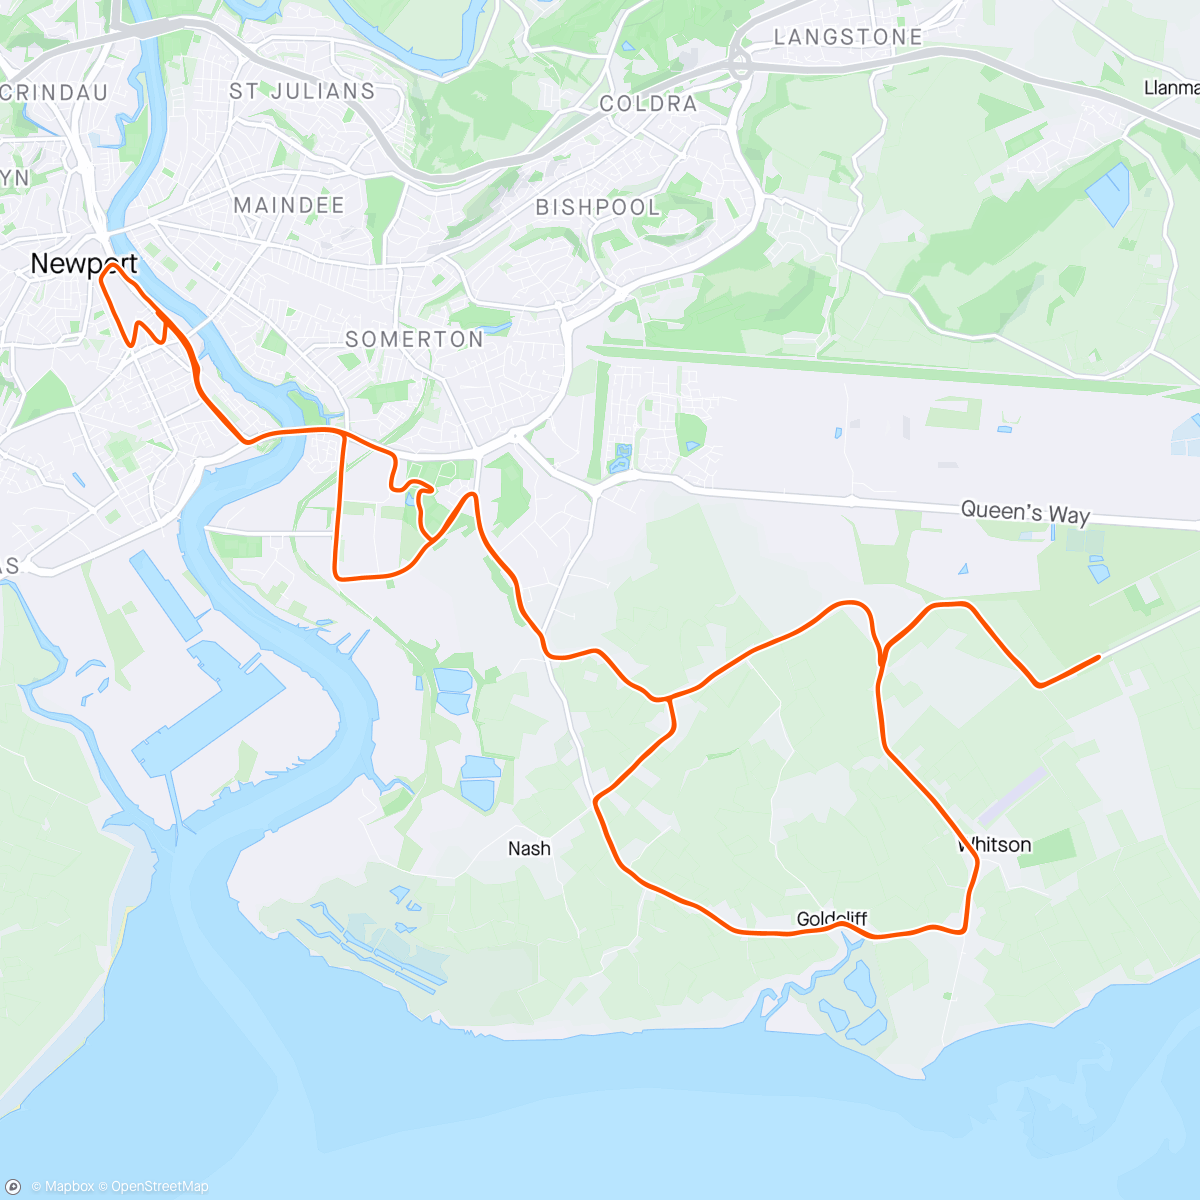 「Newport marathon」活動的地圖